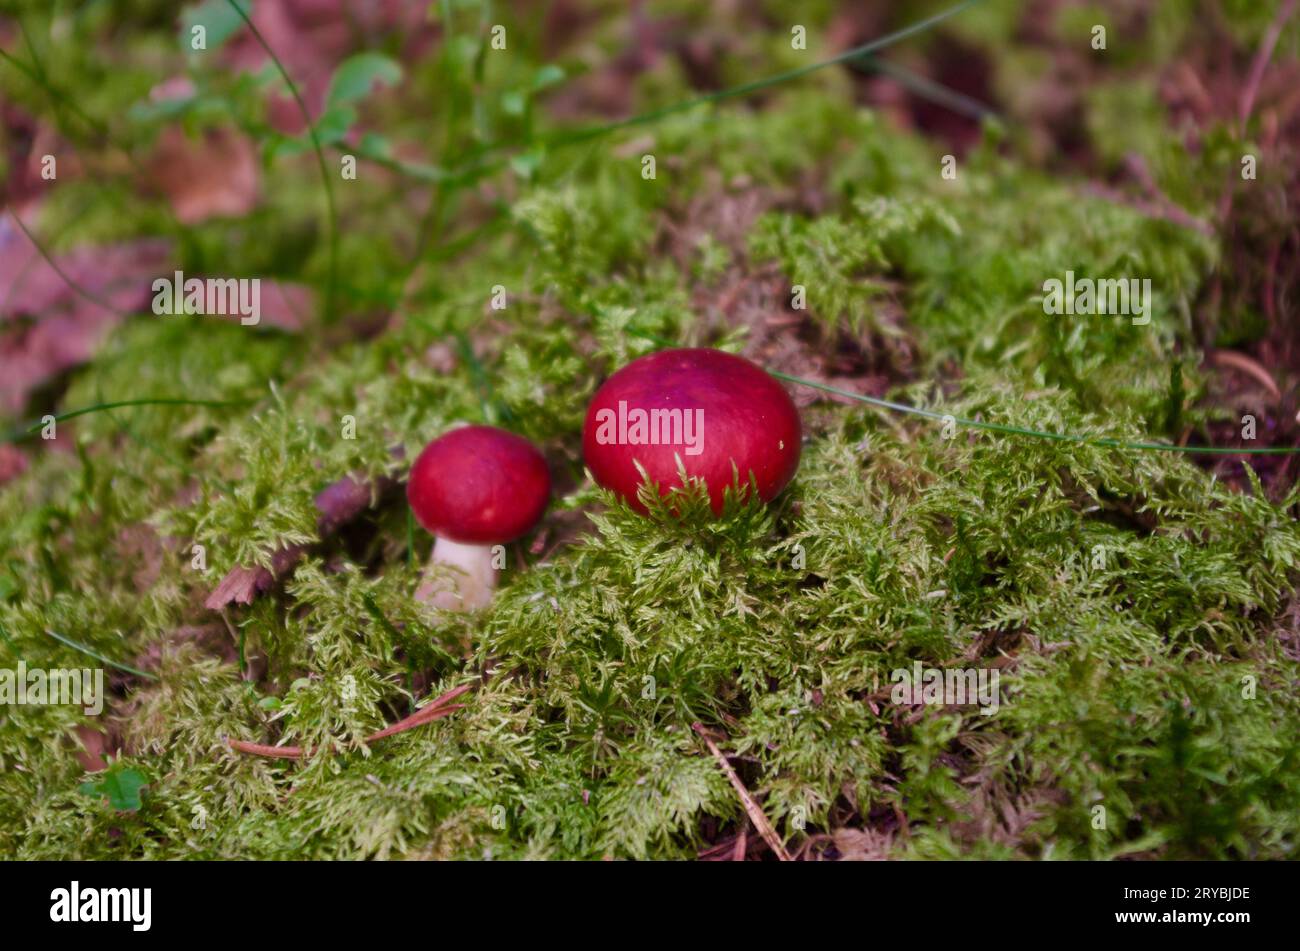 Zwei Russula-Pilze mit roten Kappen, die im Herbst in grünem Moos in einer Waldlandschaft wachsen. Stockfoto